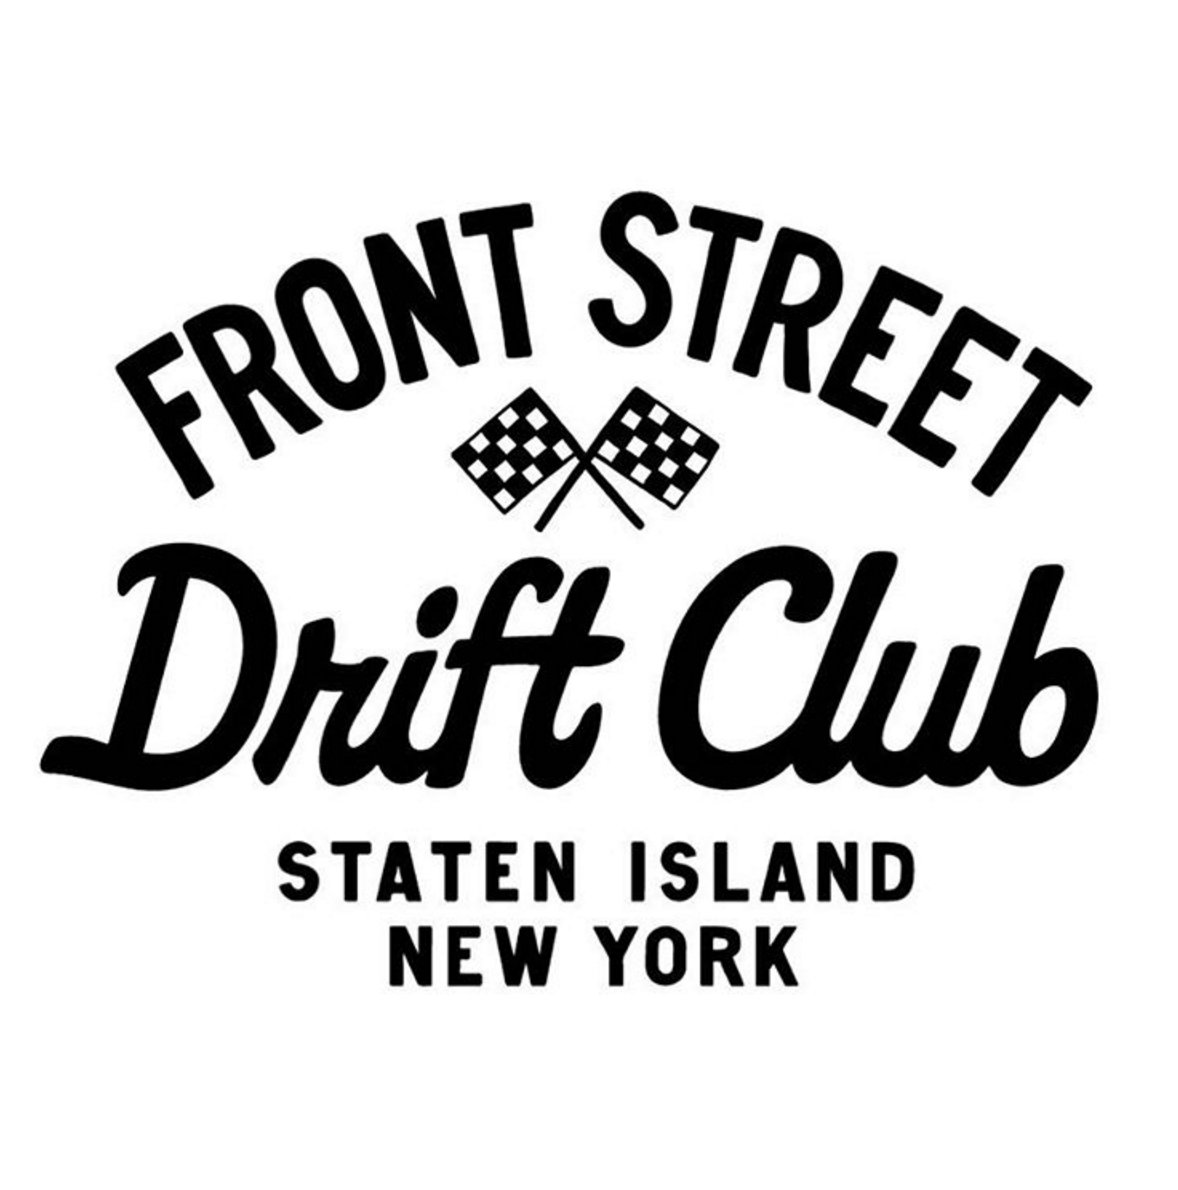 Frontstreet Drift Club